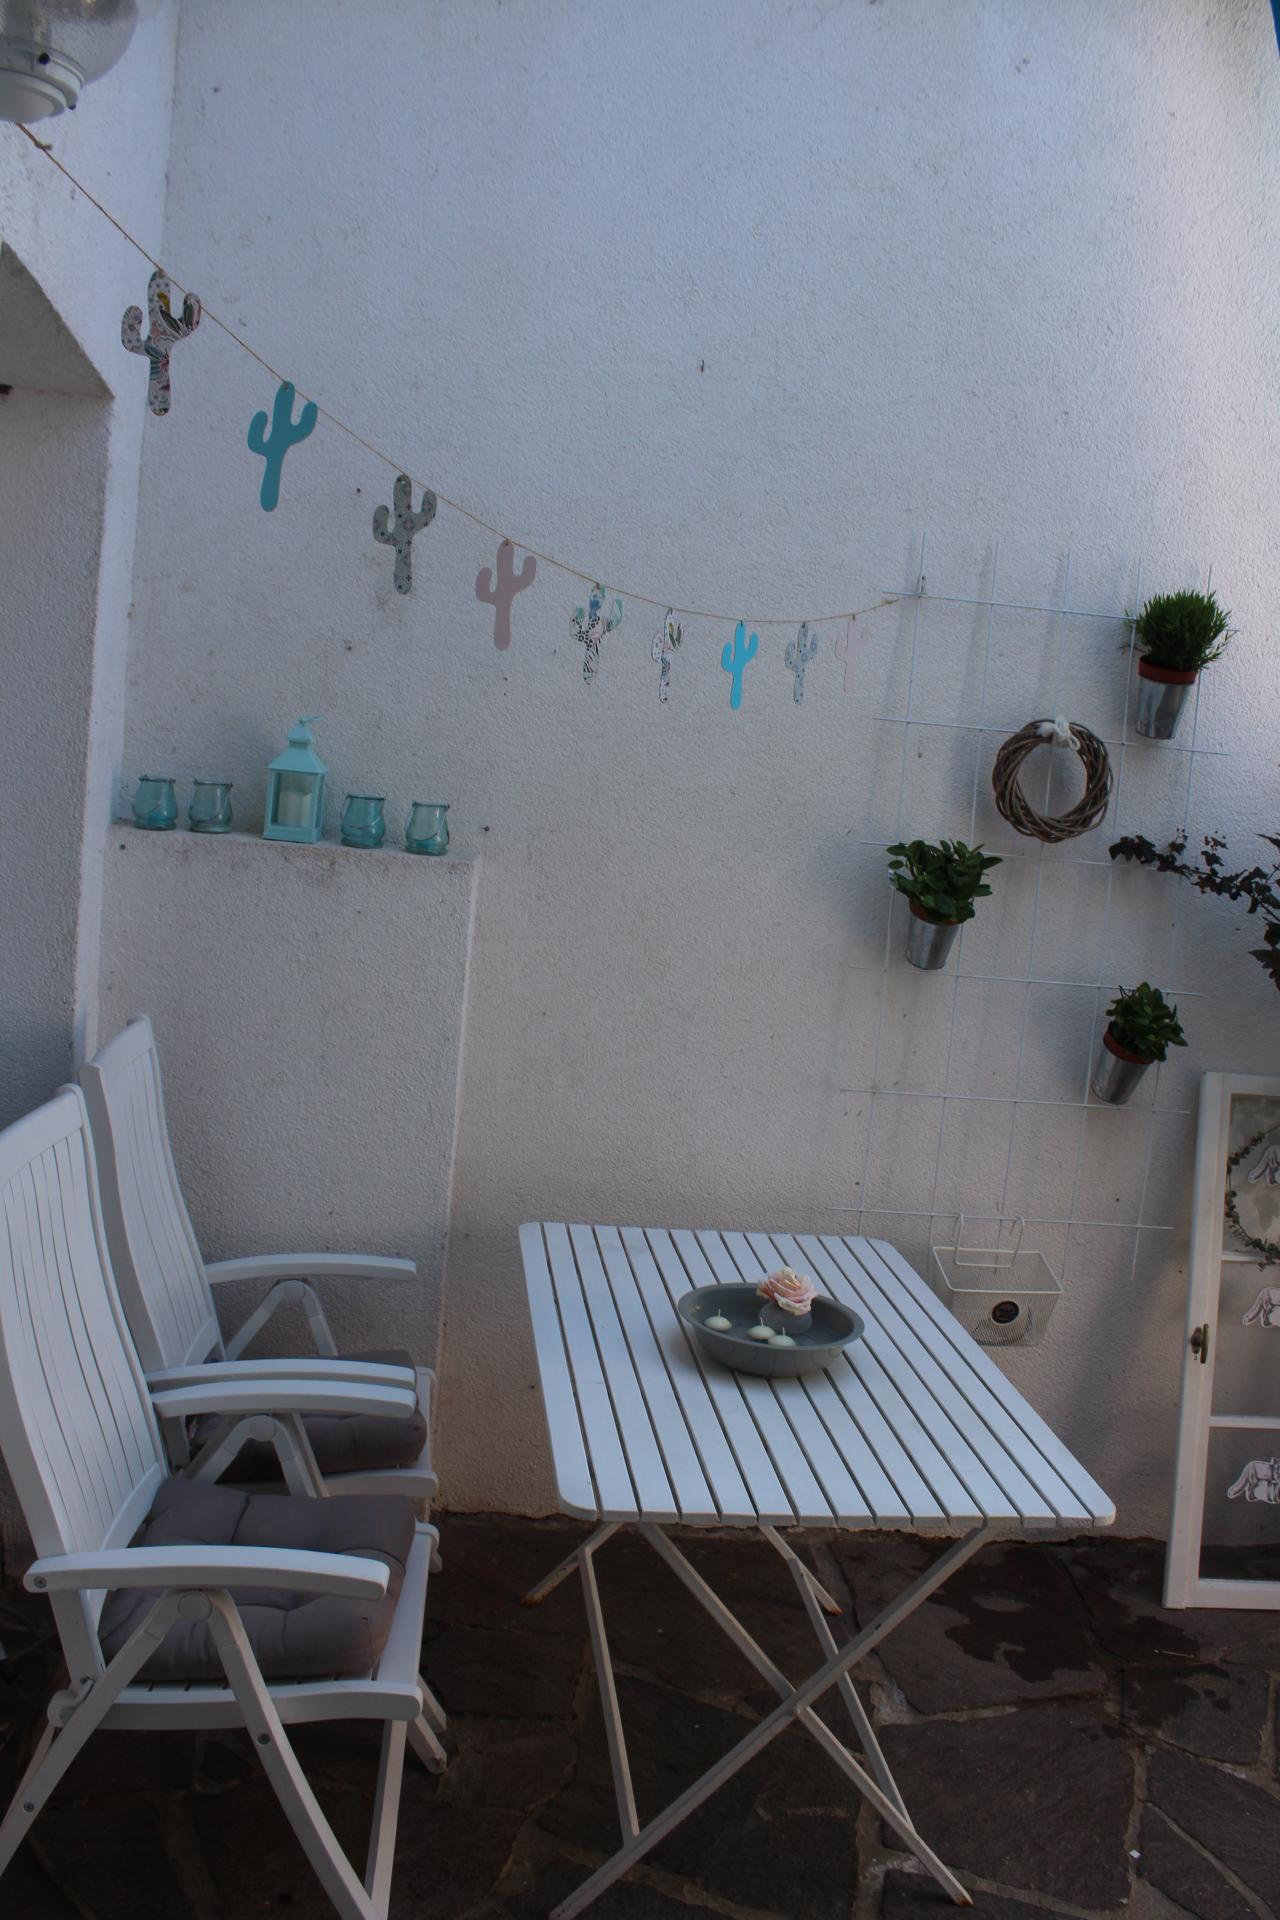 Mein Lieblingsplatz ist unsere kleine Terrasse im Frühling mit einer Tasse Kaffee und der neuen Couch. #Lieblingsplatz